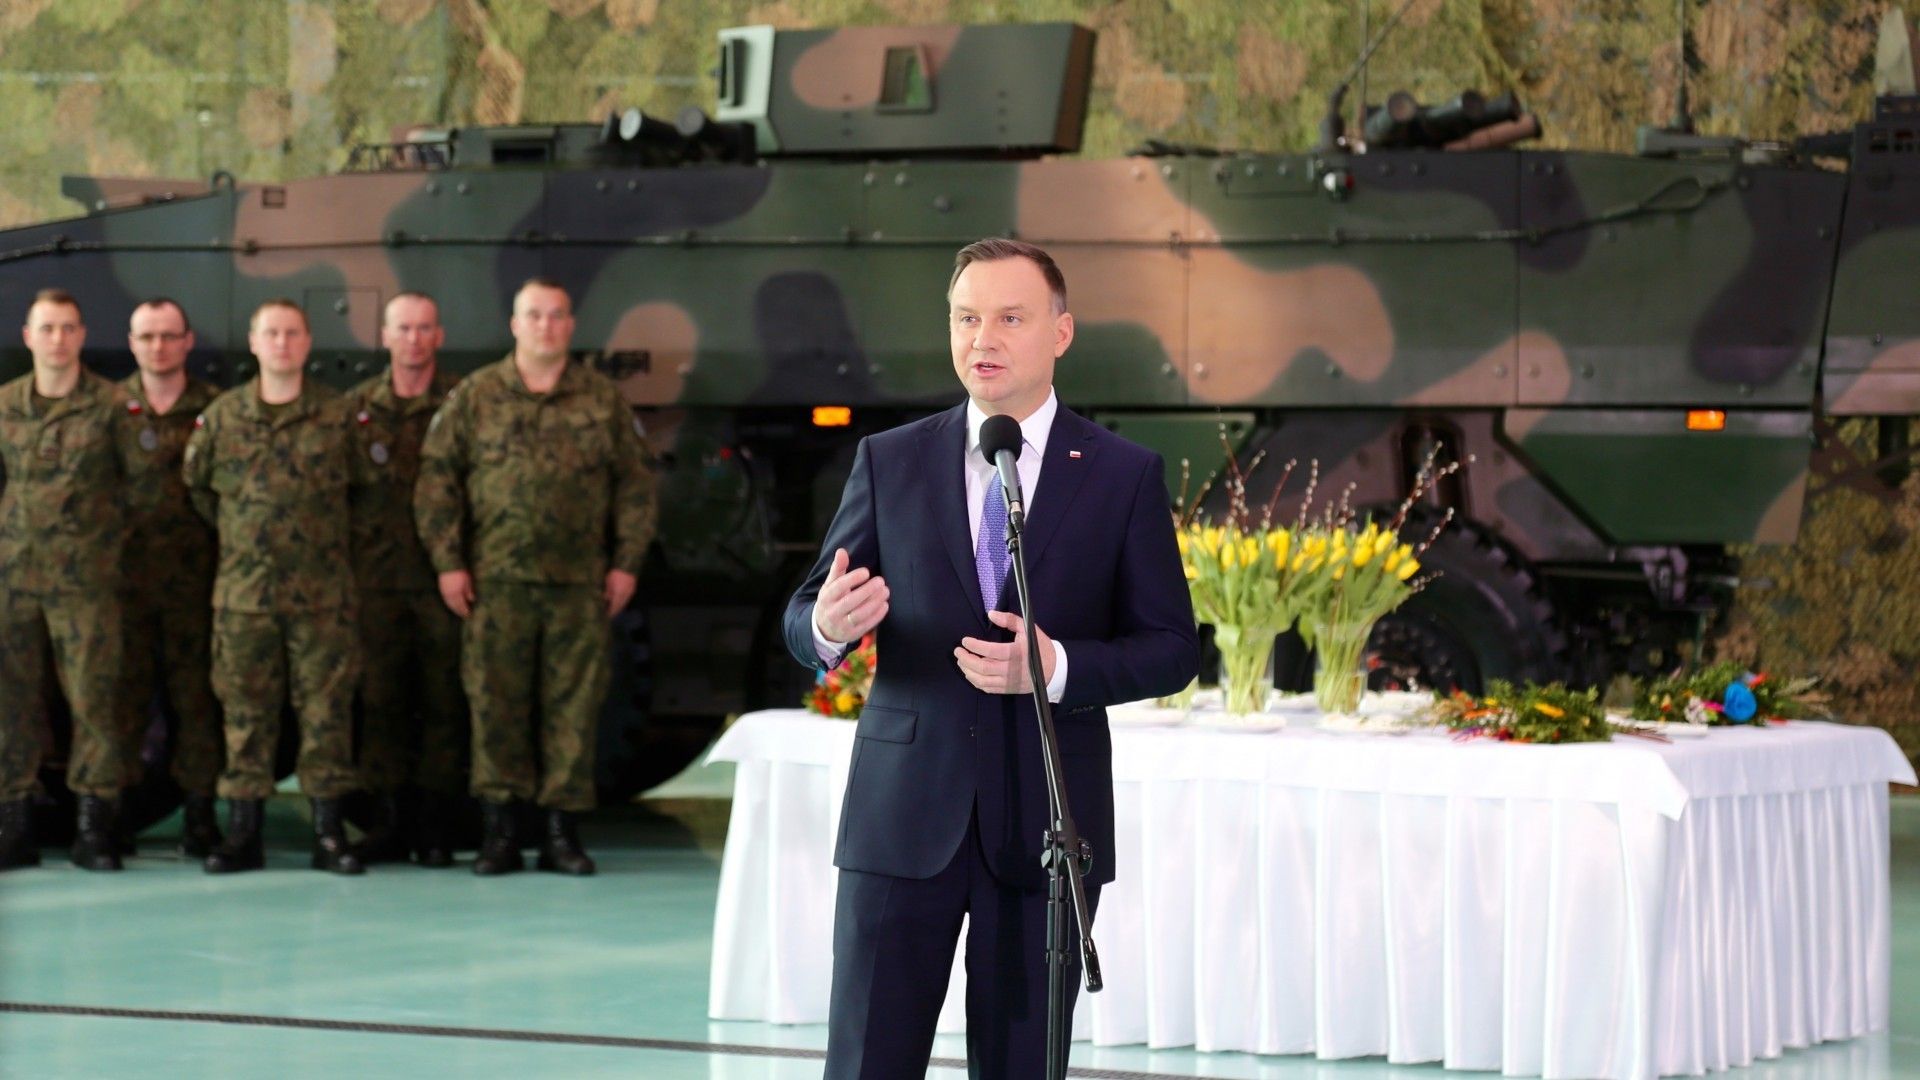 Prezydent Andrzej Duda składa życzenia wielkanocne żołnierzom. Fot. Rafał Lesiecki / Defence24.pl